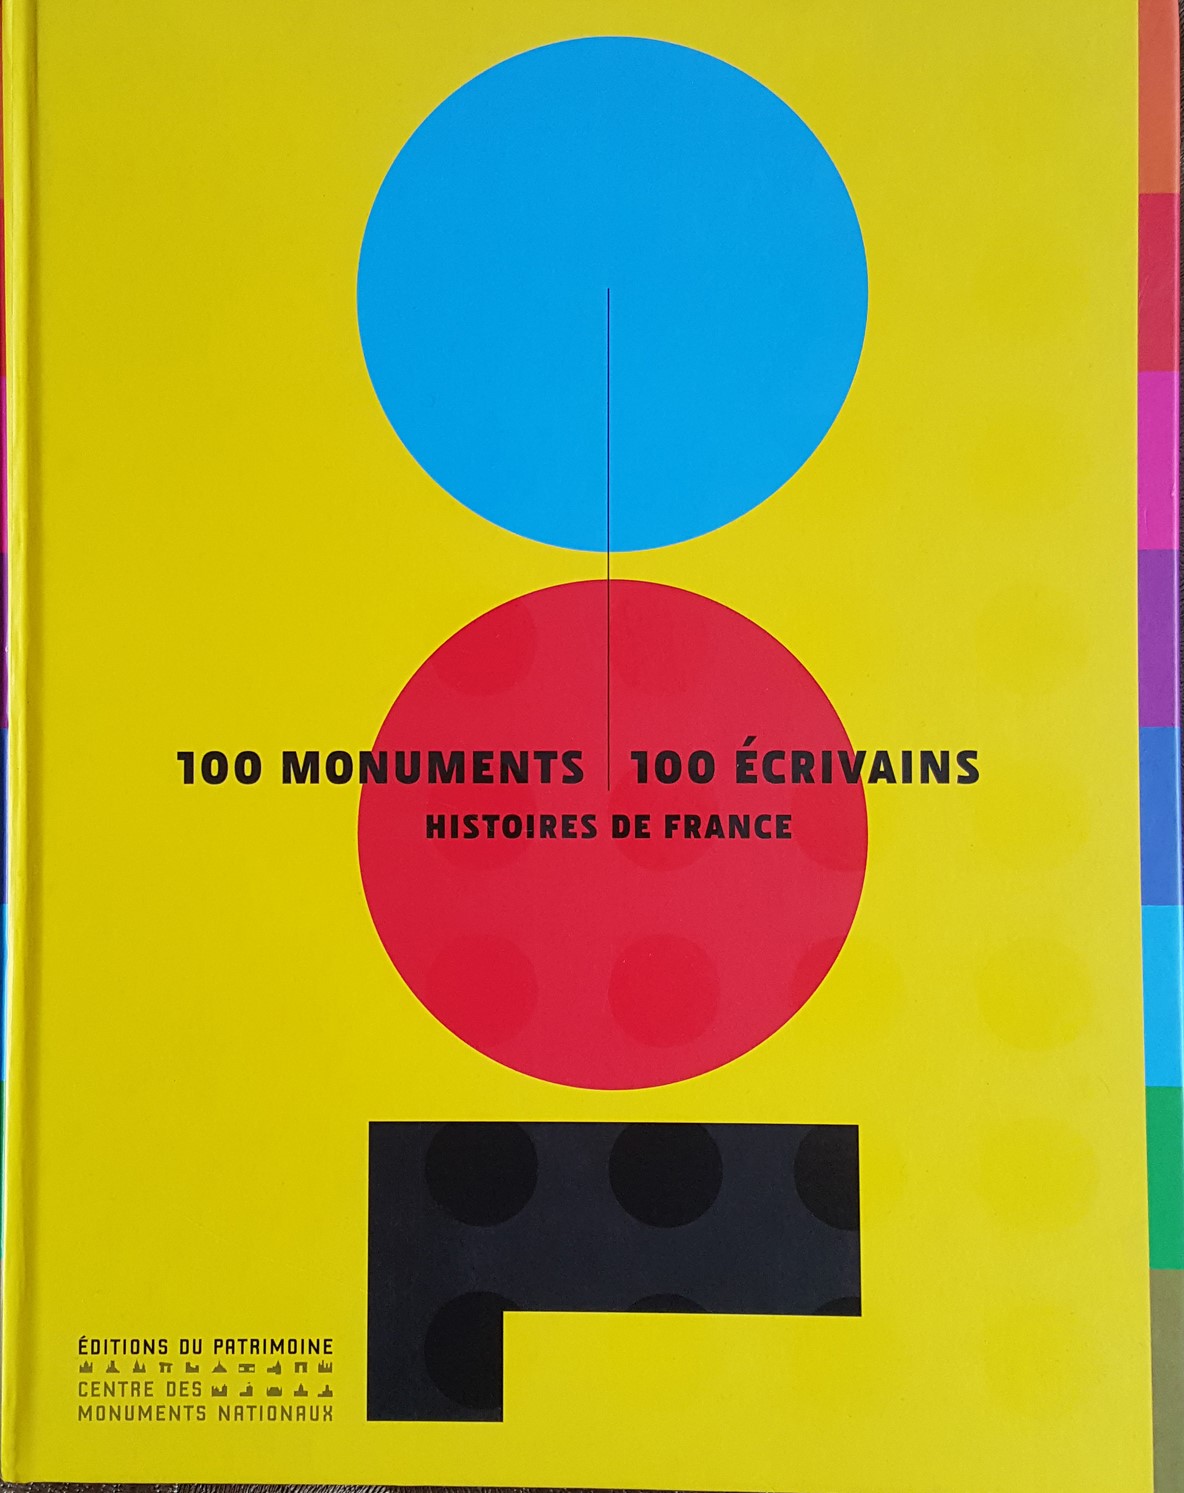 100 monuments, 100 écrivains